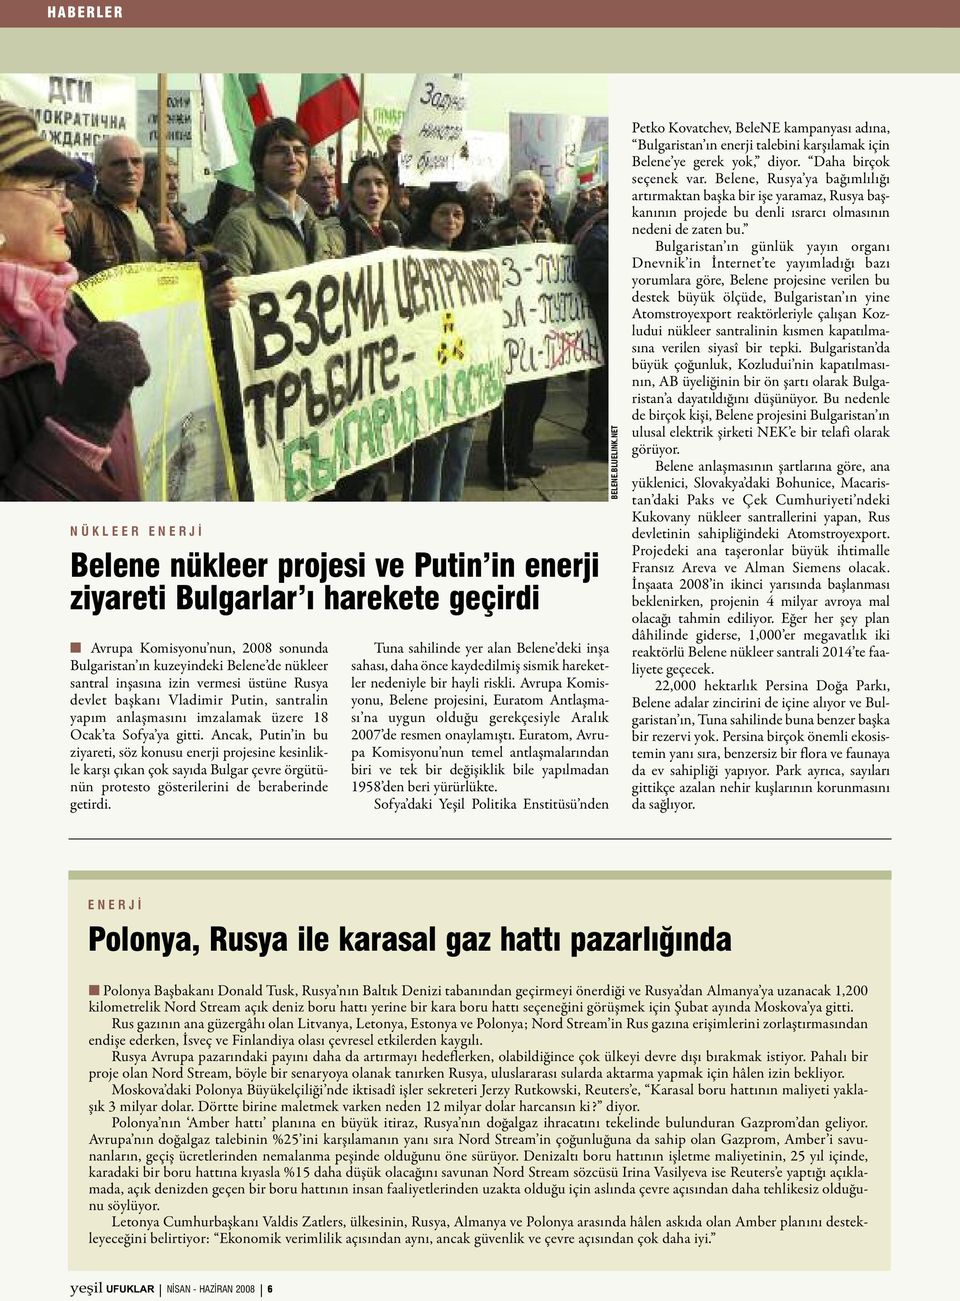 Ancak, Putin in bu ziyareti, söz konusu enerji projesine kesinlikle karşı çıkan çok sayıda Bulgar çevre örgütünün protesto gösterilerini de beraberinde getirdi.